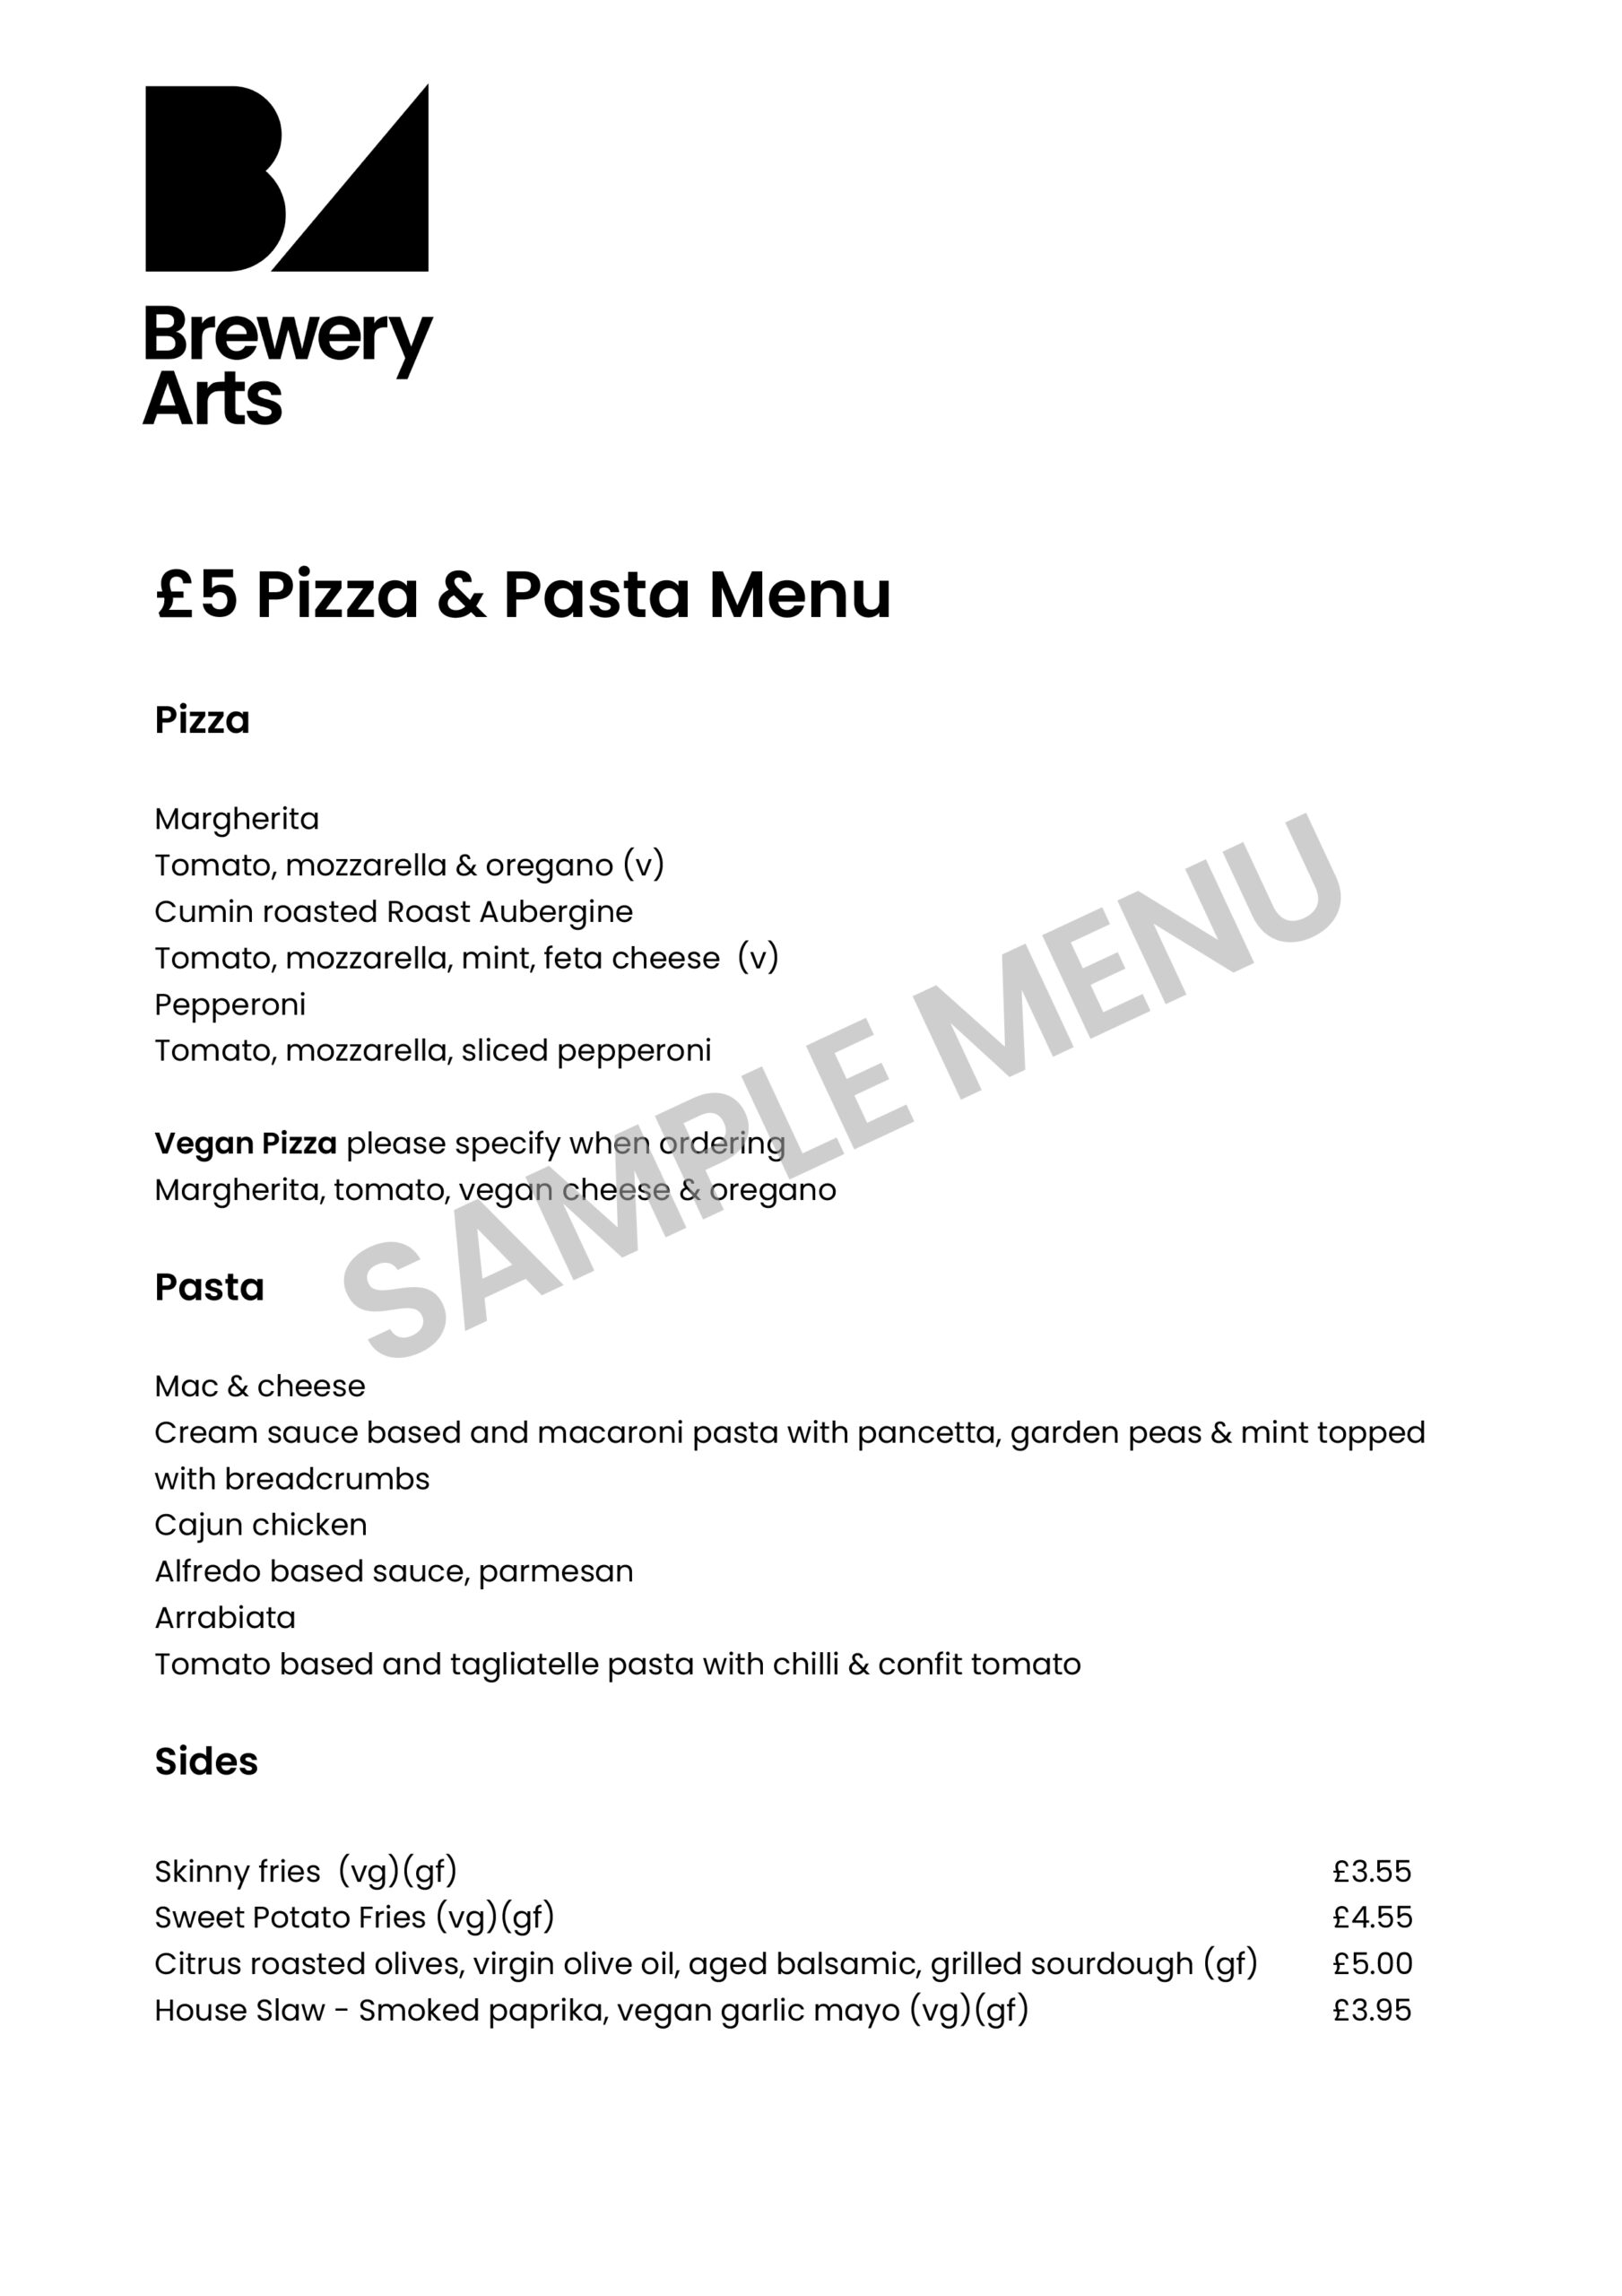 Pizza pasta £5 deal menu